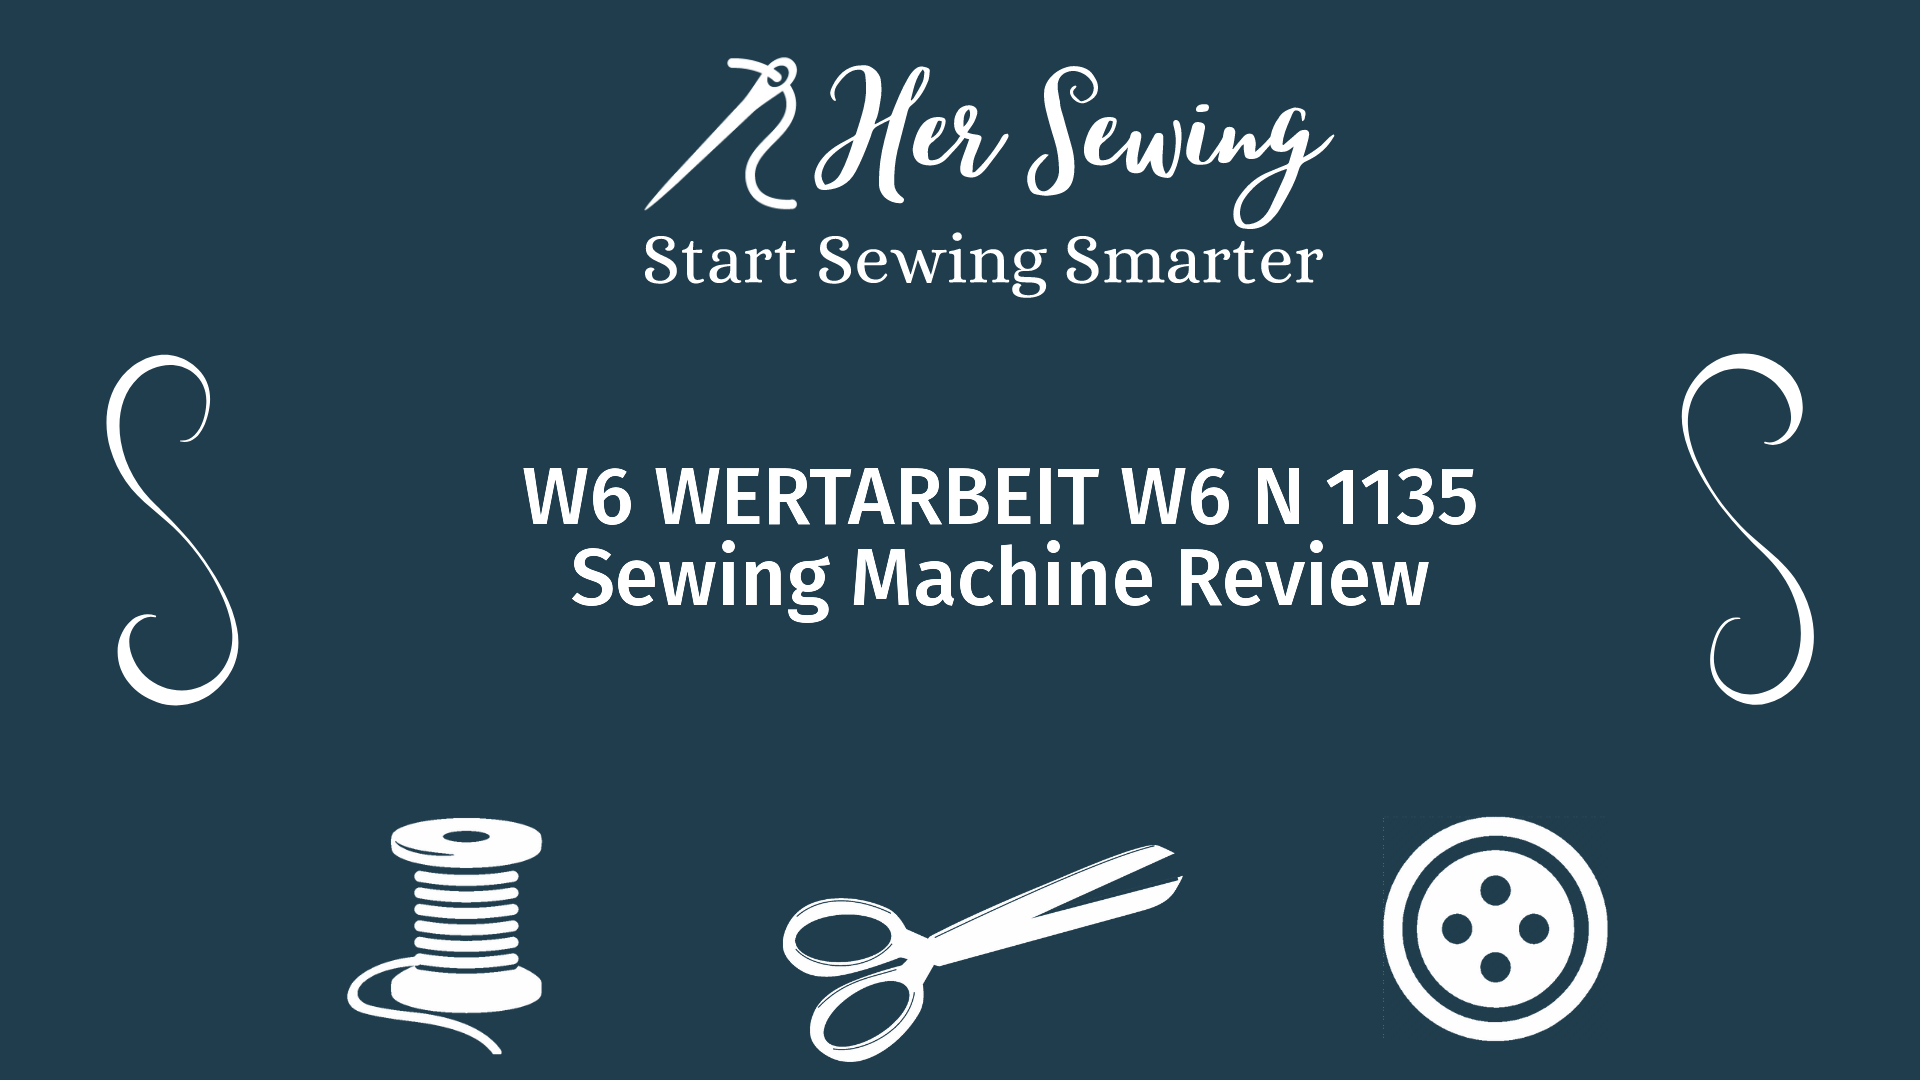 W6 WERTARBEIT W6 N 1135 Sewing Machine Review